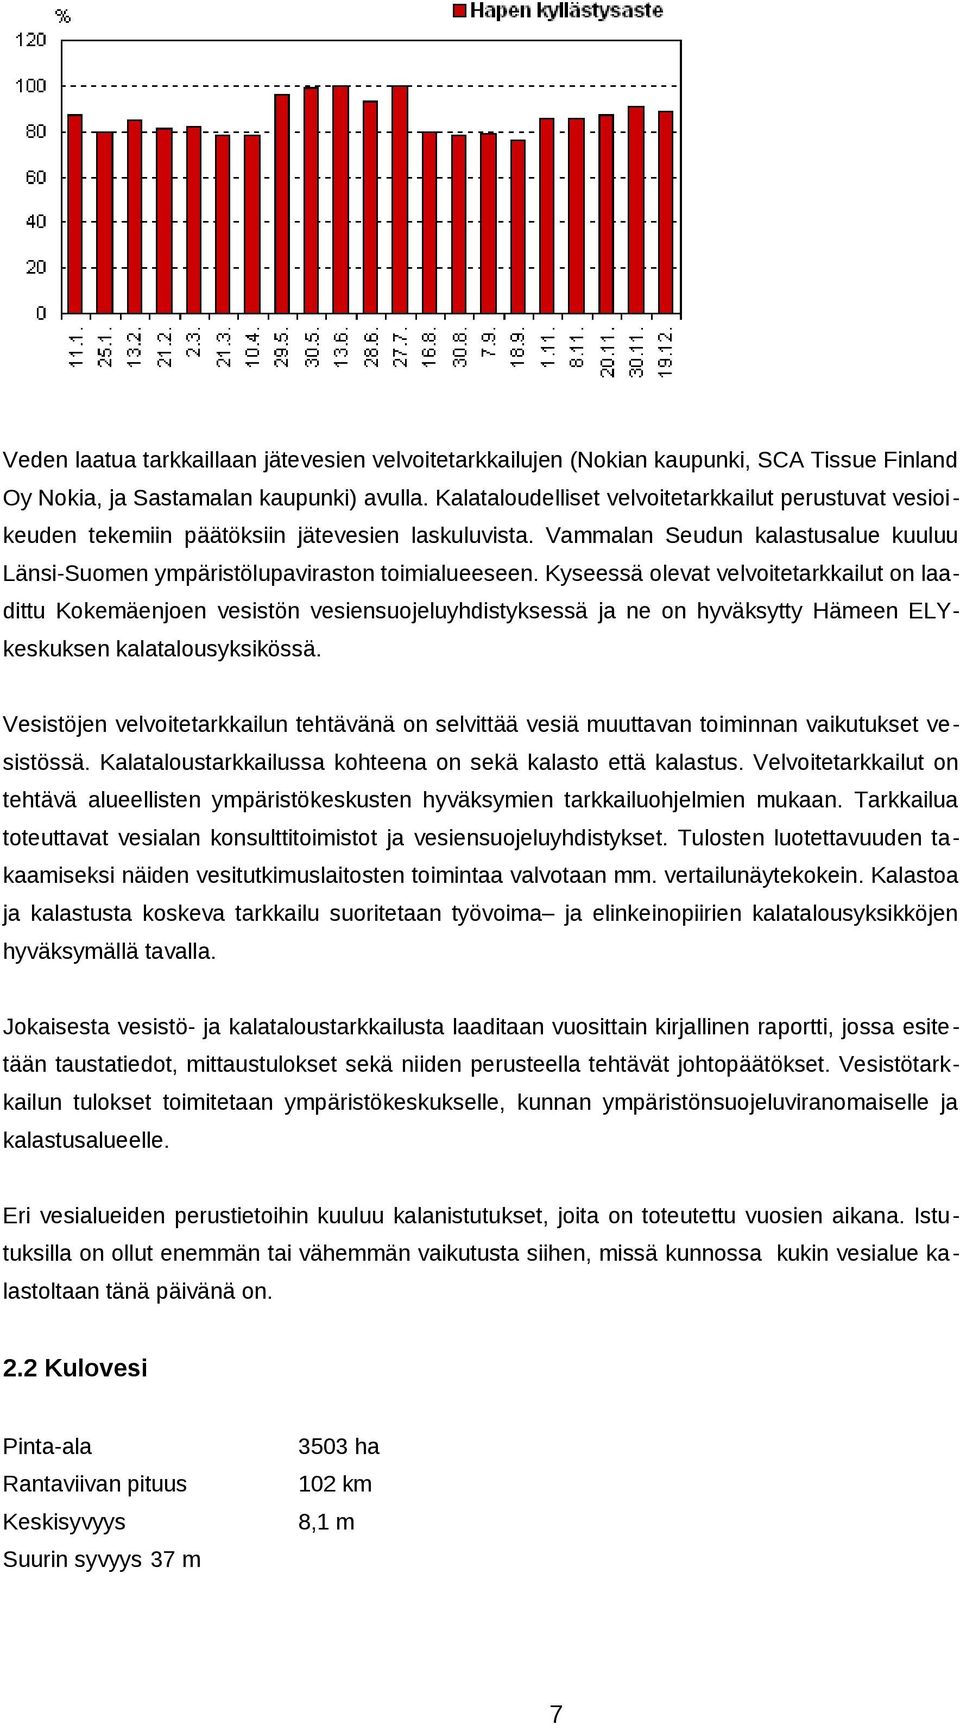 Kyseessä olevat velvoitetarkkailut on laadittu Kokemäenjoen vesistön vesiensuojeluyhdistyksessä ja ne on hyväksytty Hämeen ELYkeskuksen kalatalousyksikössä.